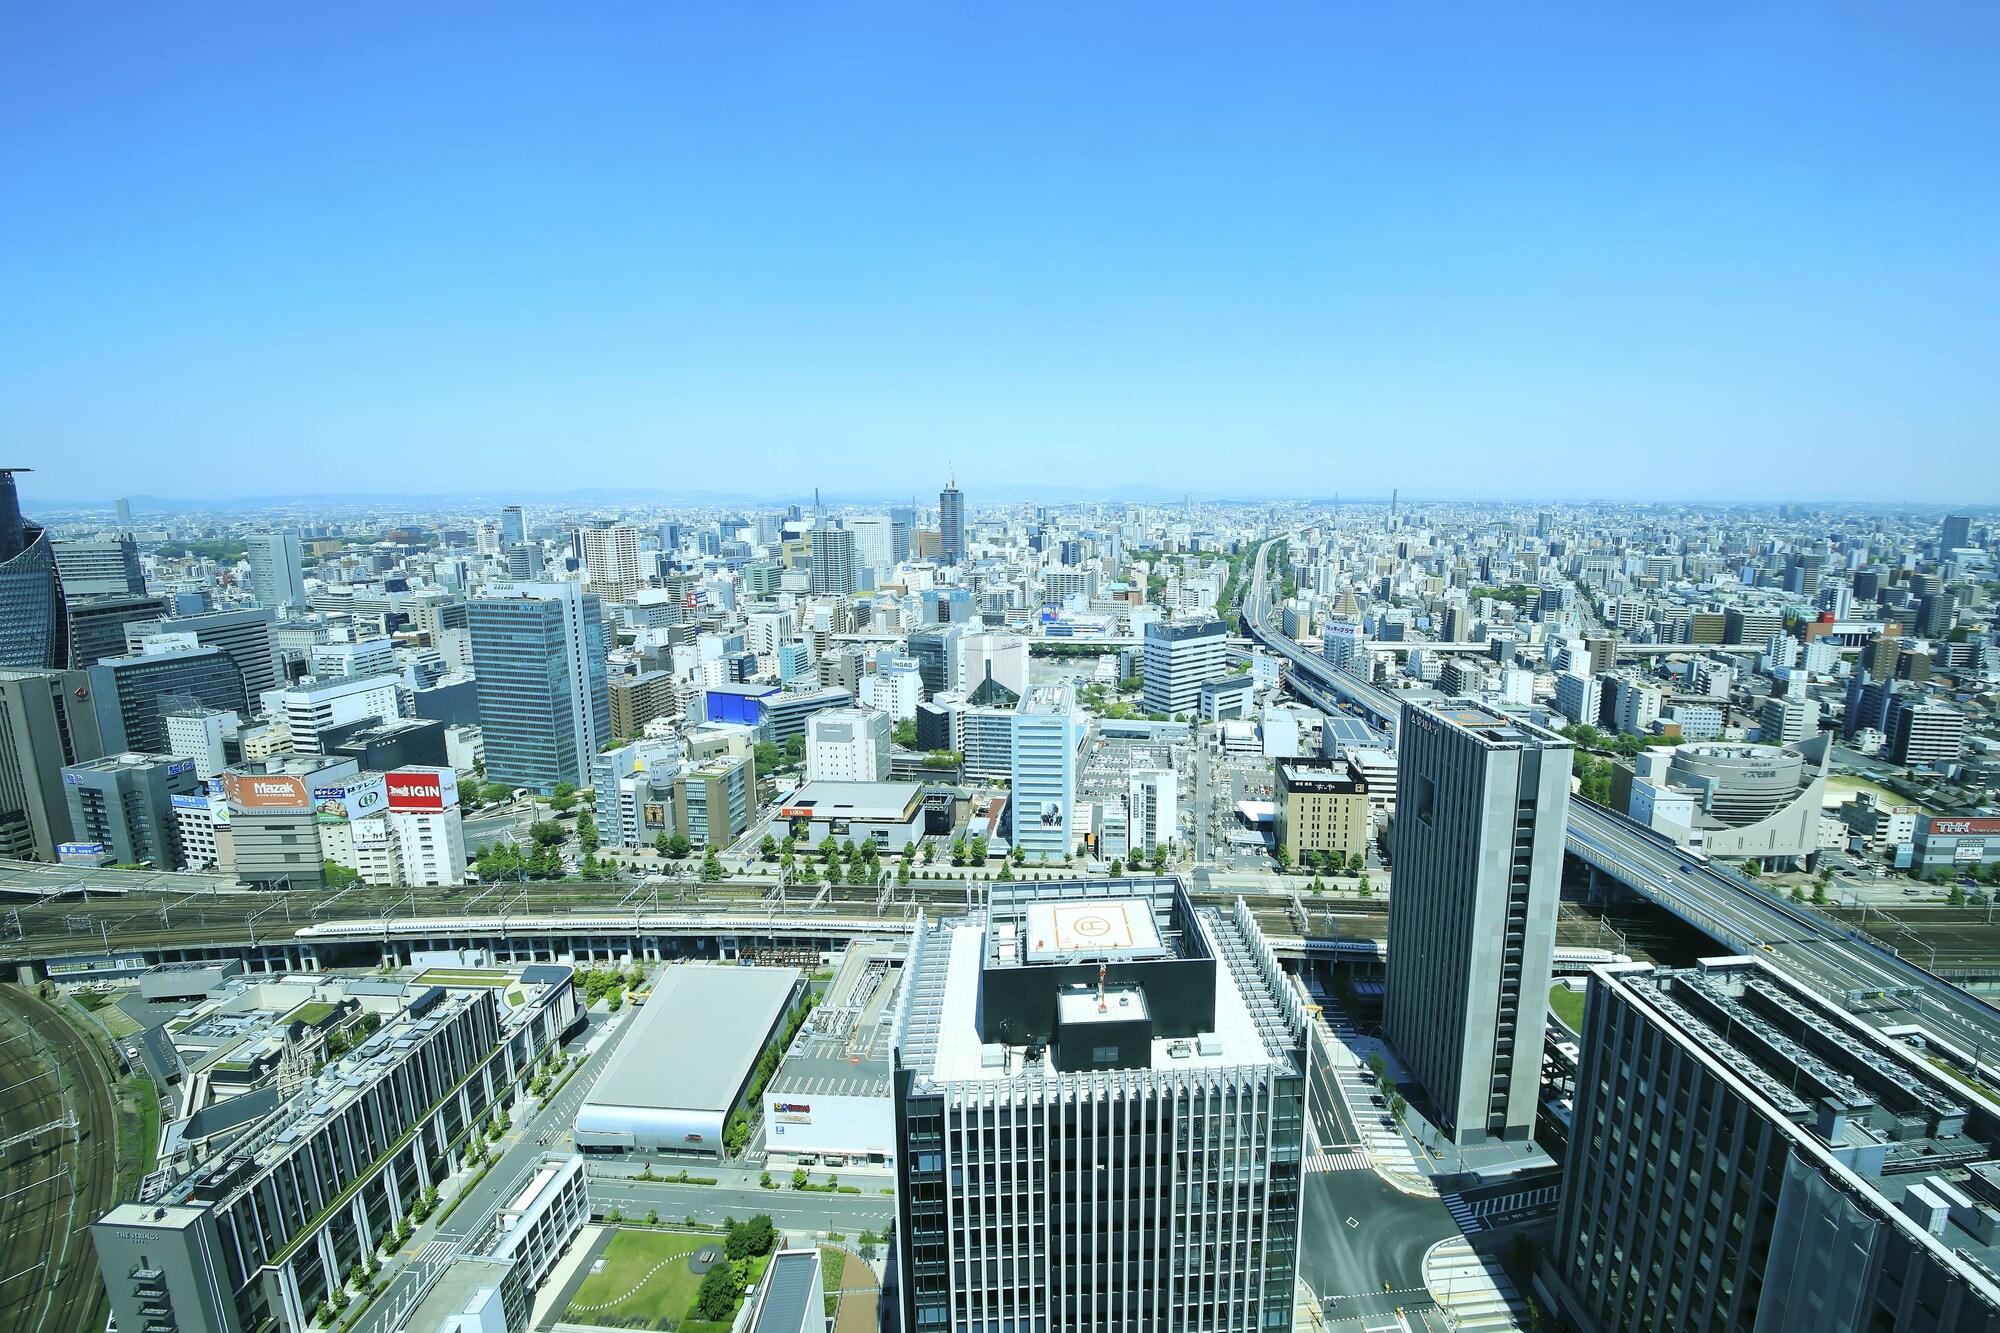 Nagoya Prince Hotel Sky Tower image